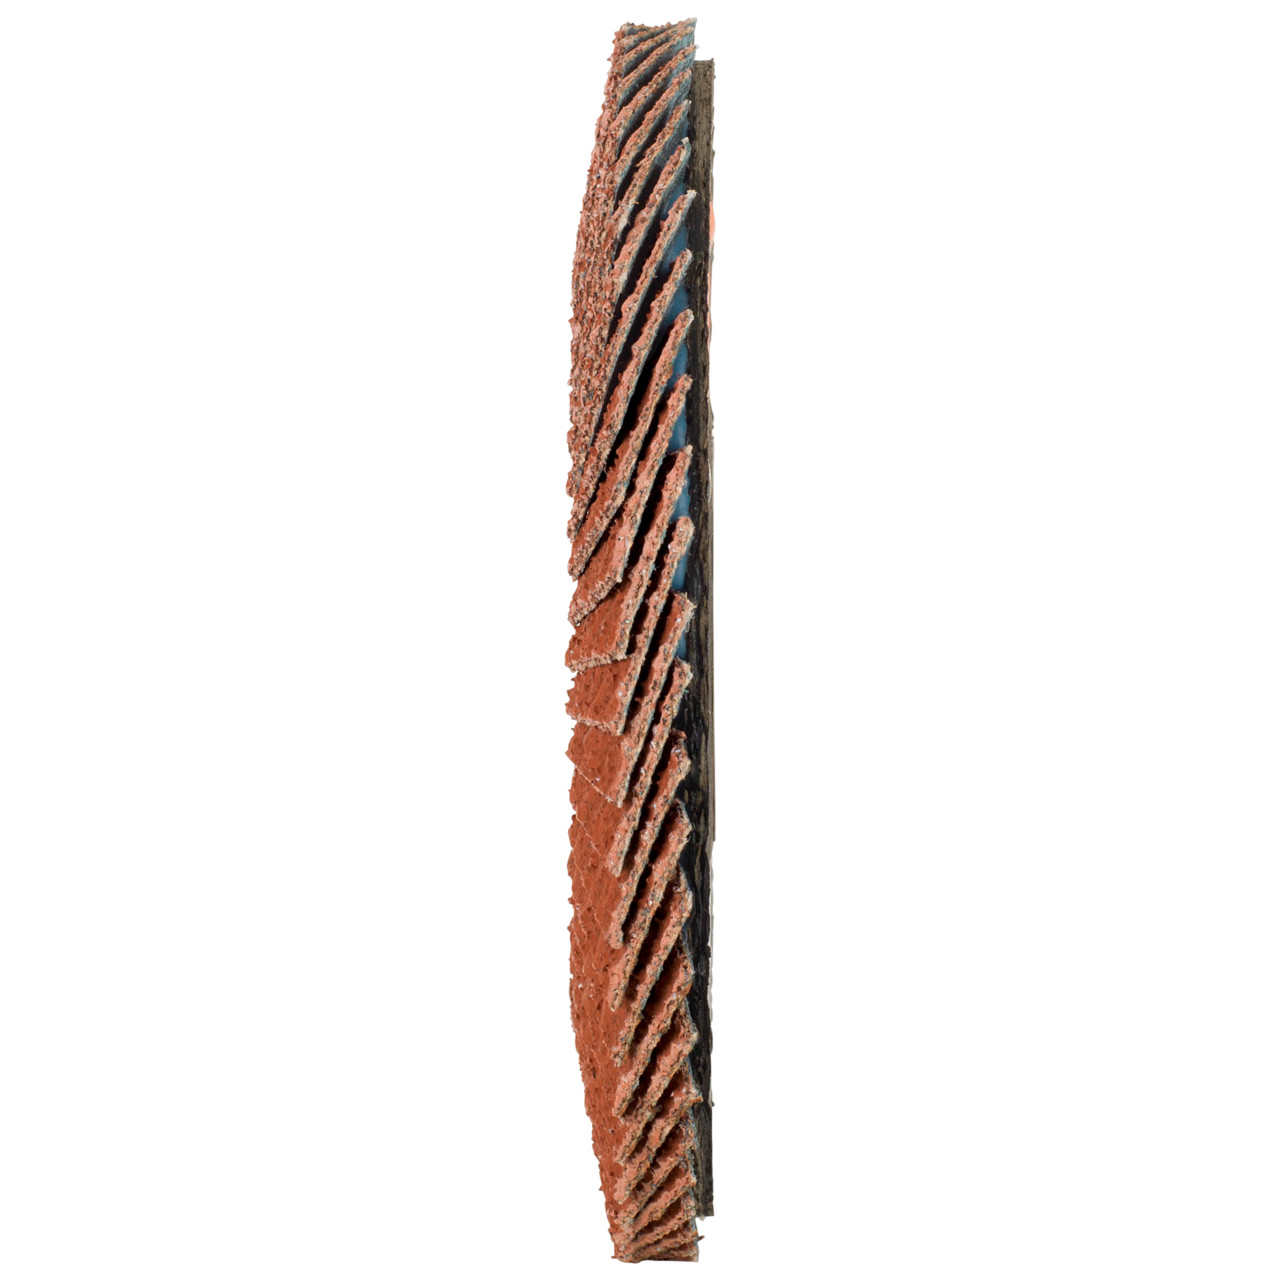 Tyrolit Arandela de seguridad dentada DxH 125x22,23 Para metales no férricos, P80, forma: 27A - diseño acodado (diseño de cuerpo portador de fibra de vidrio), Art. 707013